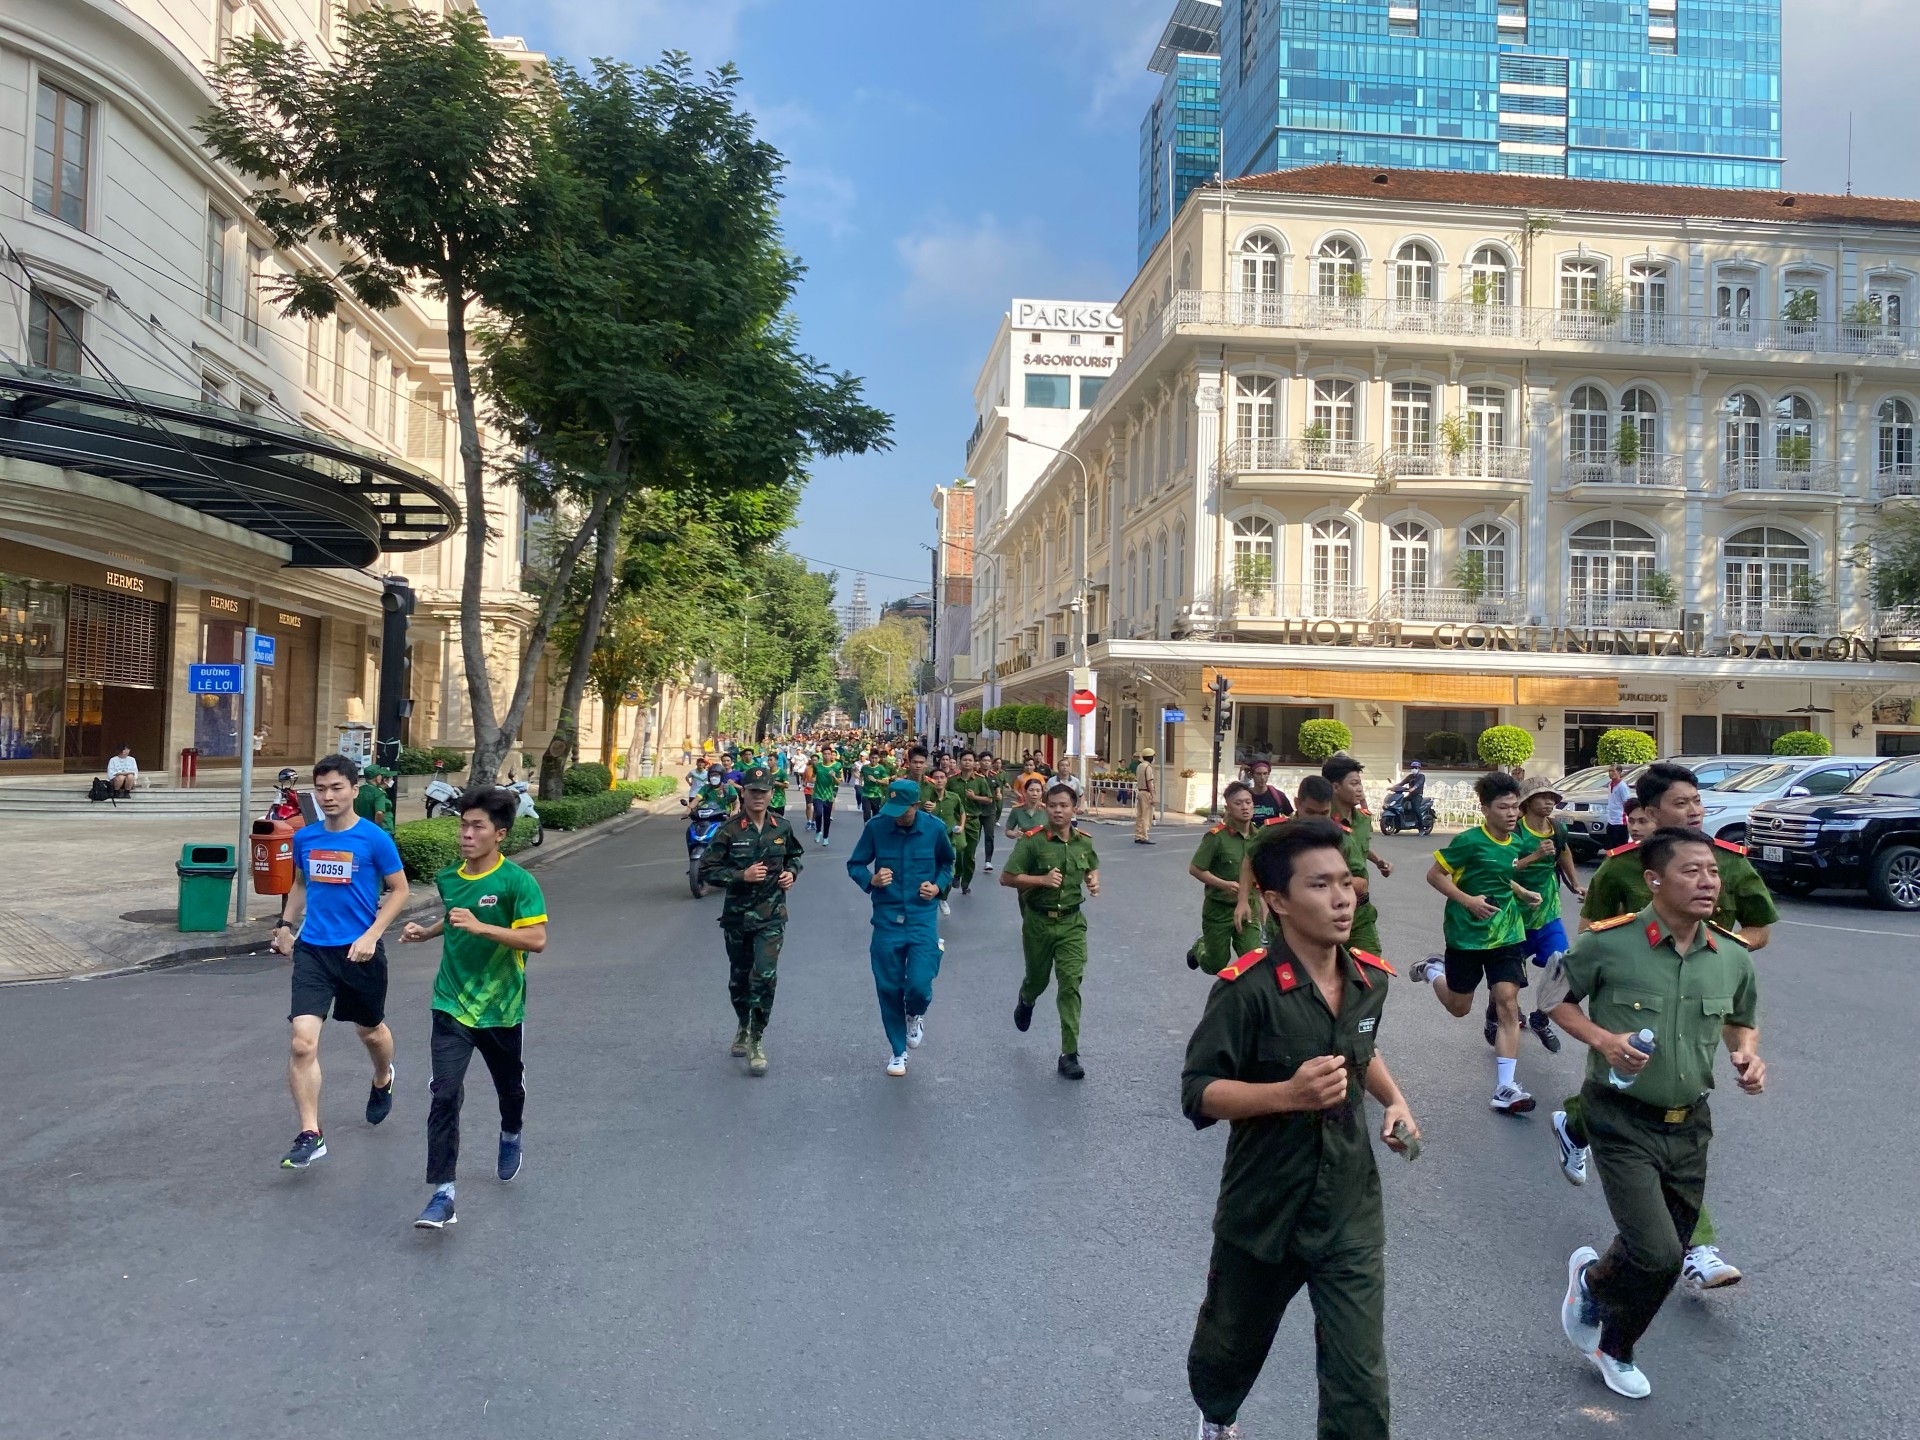 Thành phố Hồ Chí Minh hưởng ứng ngày chạy Olympic vì sức khỏe toàn dân